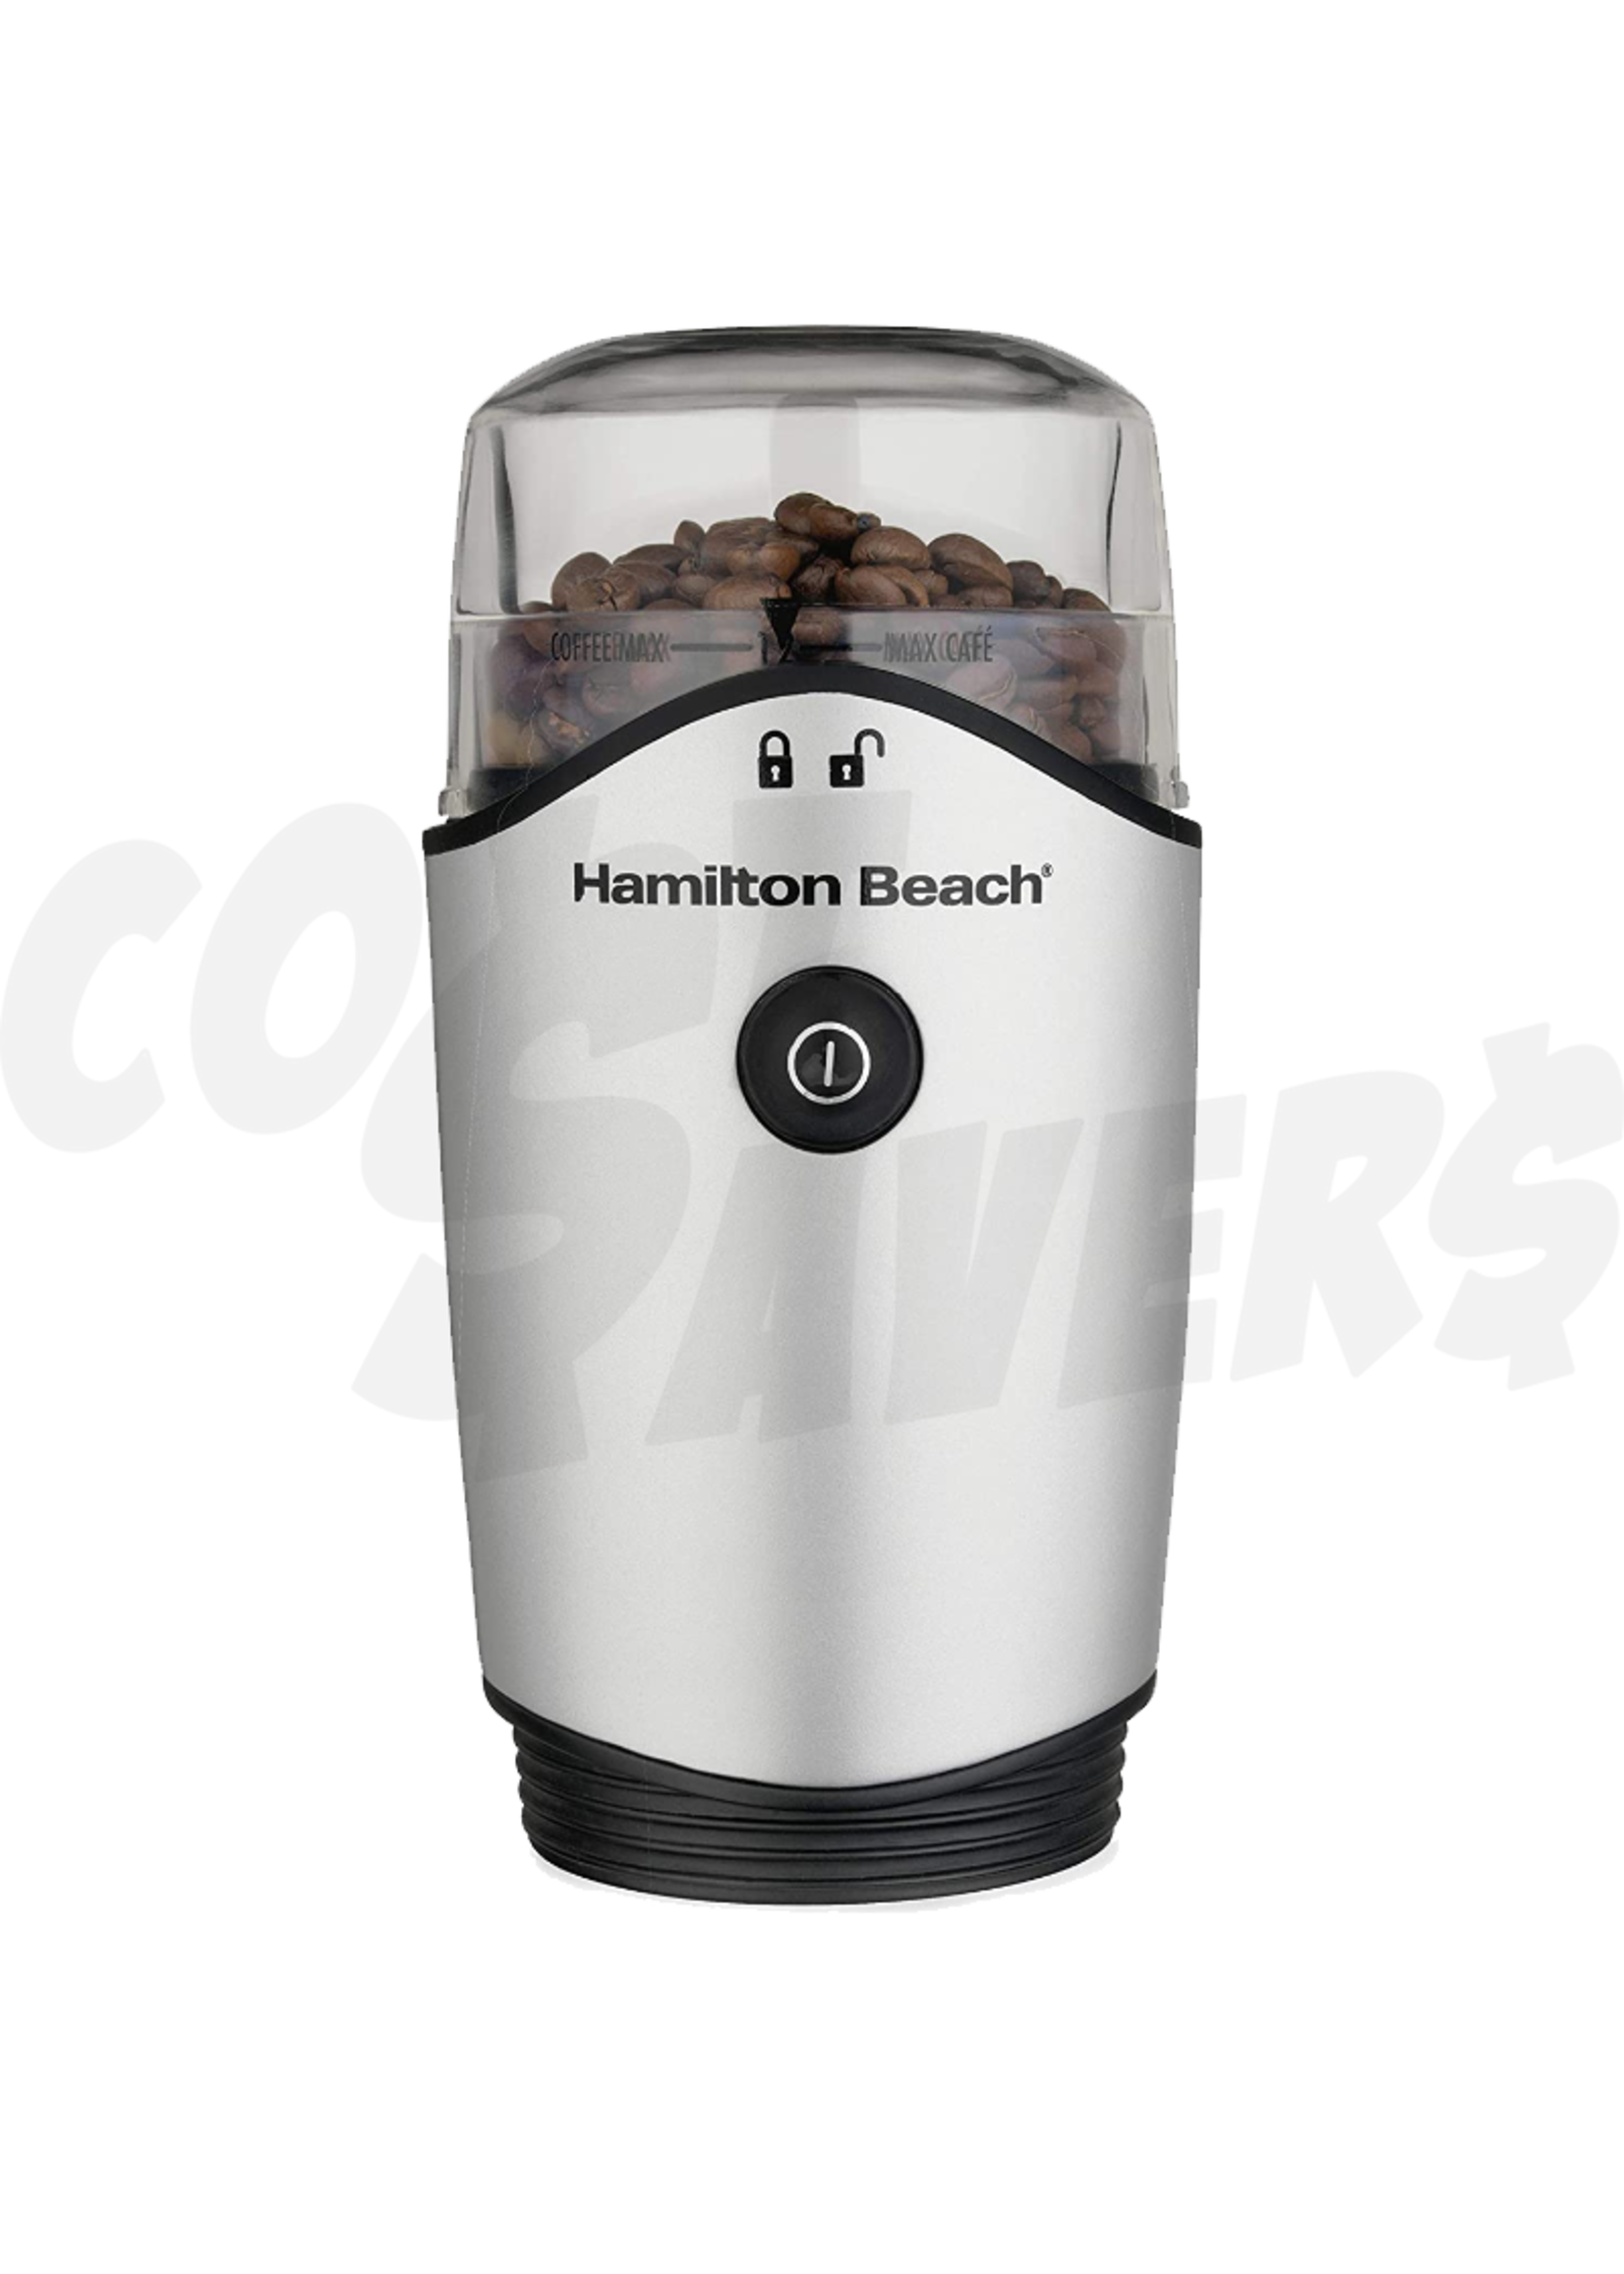 Hamilton Beach Hamilton Beach Coffee/Spice Grinder